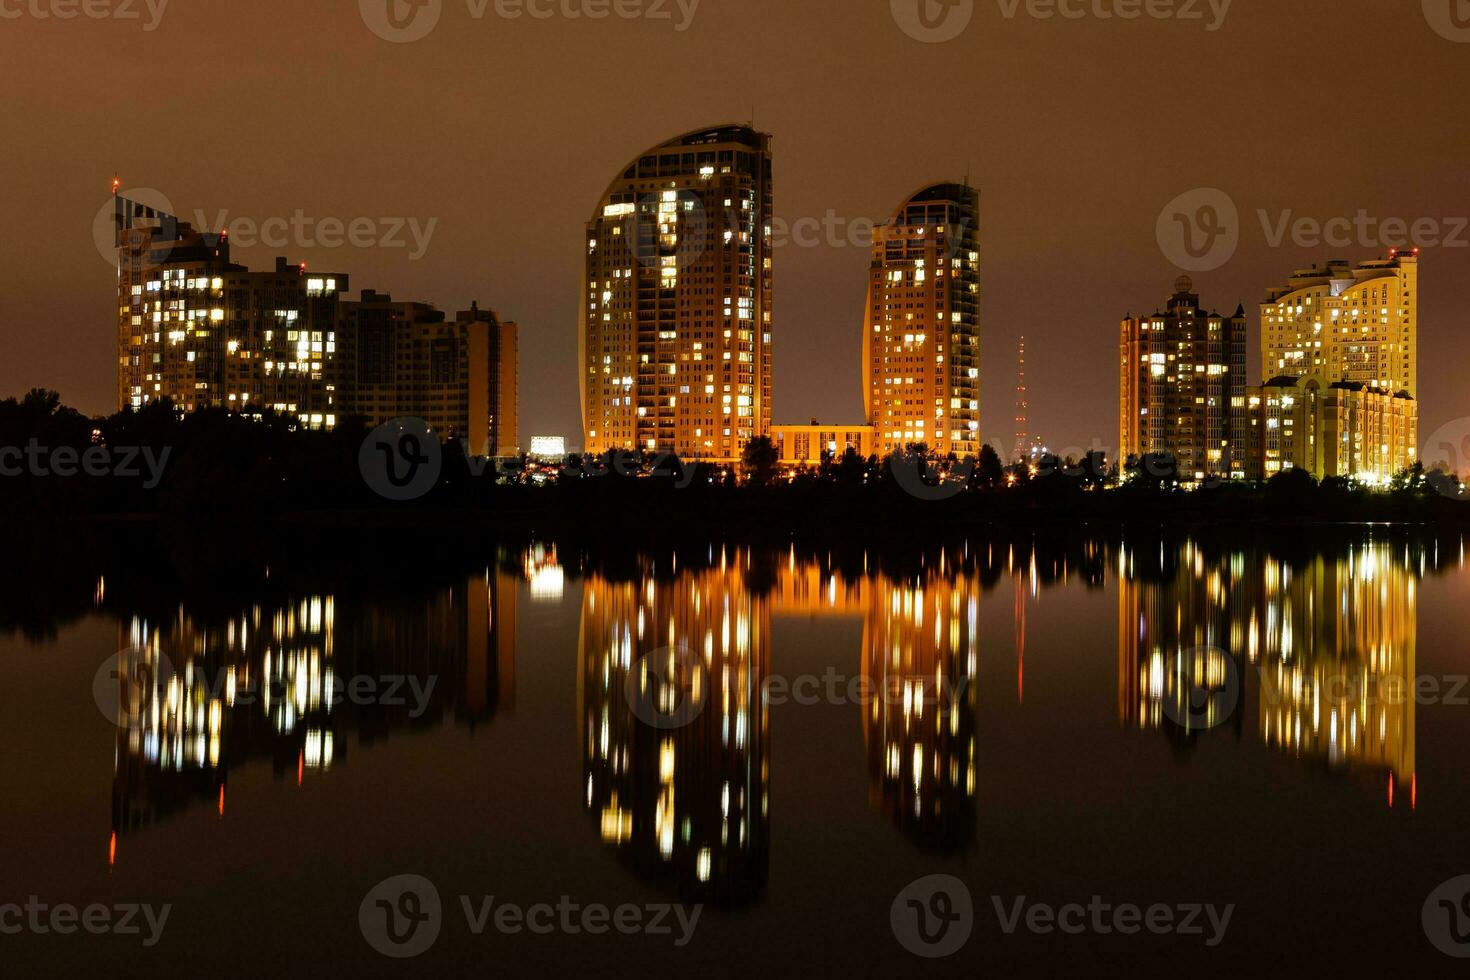 ciudad nocturna con reflejo de casas en el río foto